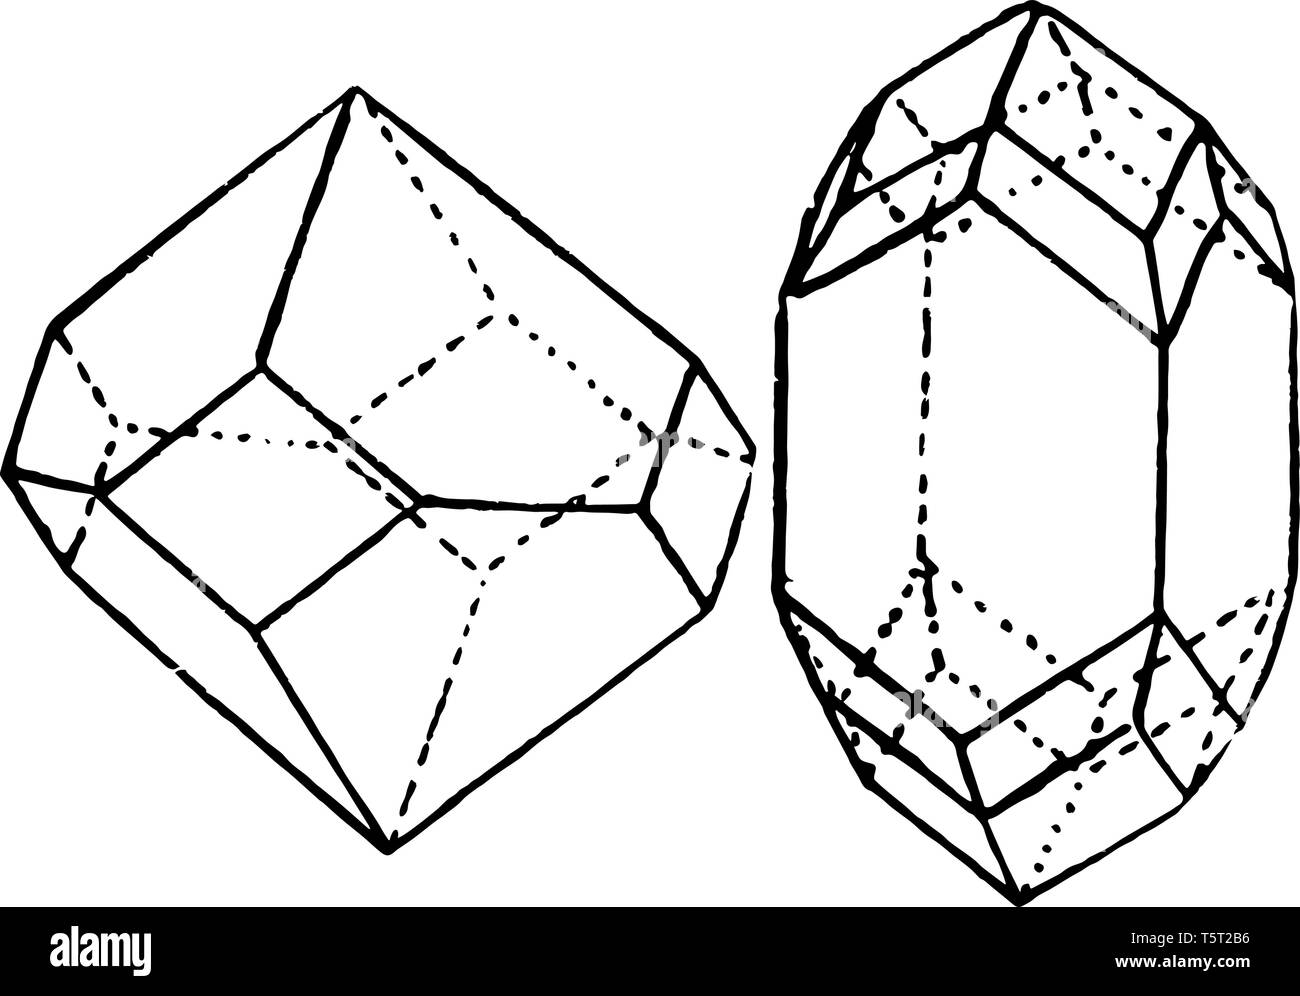 Tetrahedron combinazione campione che fa quattro assi di piegatura e la parte inferiore e la parte superiore sono indicati, vintage disegno della linea di incisione o illustrazione. Illustrazione Vettoriale